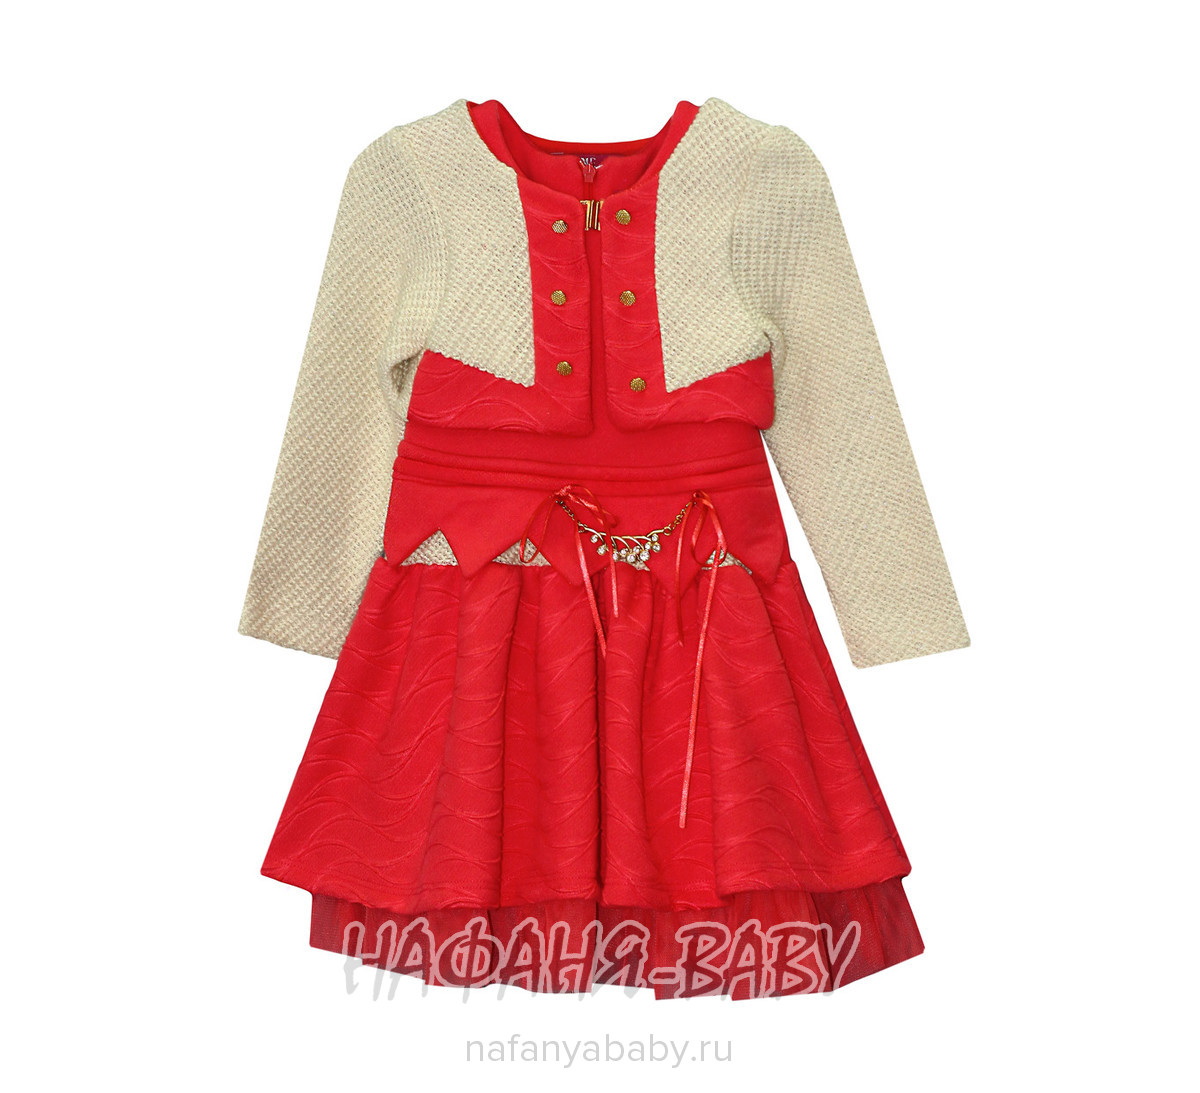 Детское нарядное платье+болеро FI & ME, купить в интернет магазине Нафаня. арт: 6002, цвет коралловый.